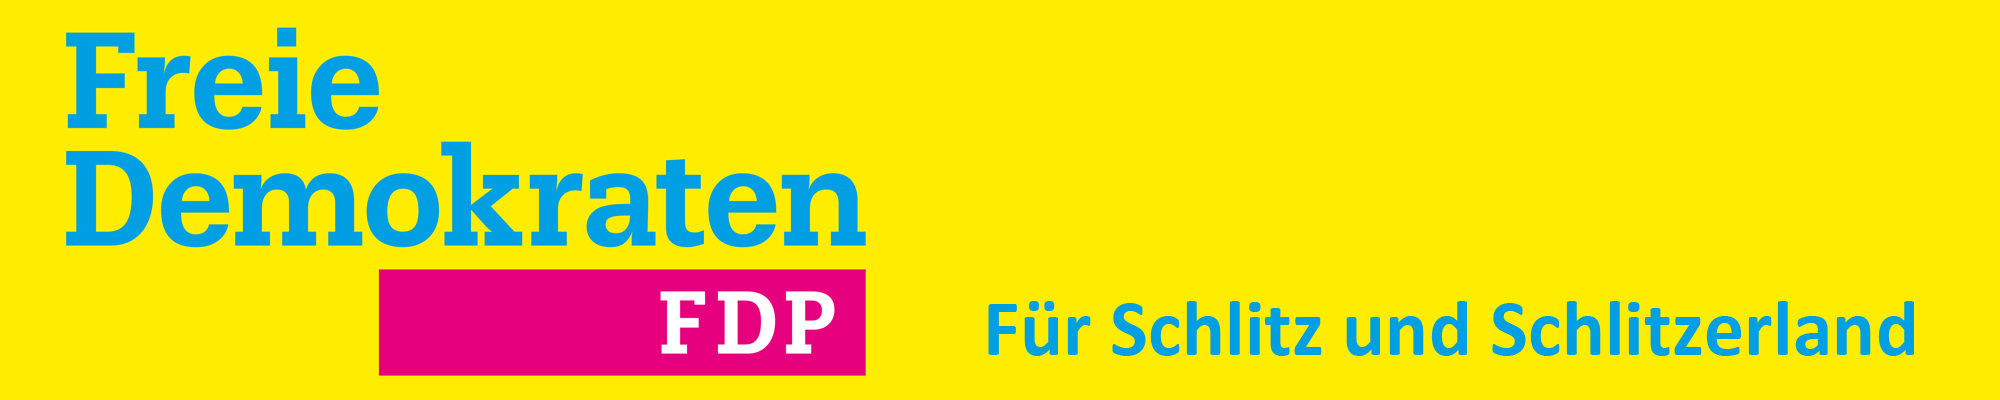 FDP Schlitzerland